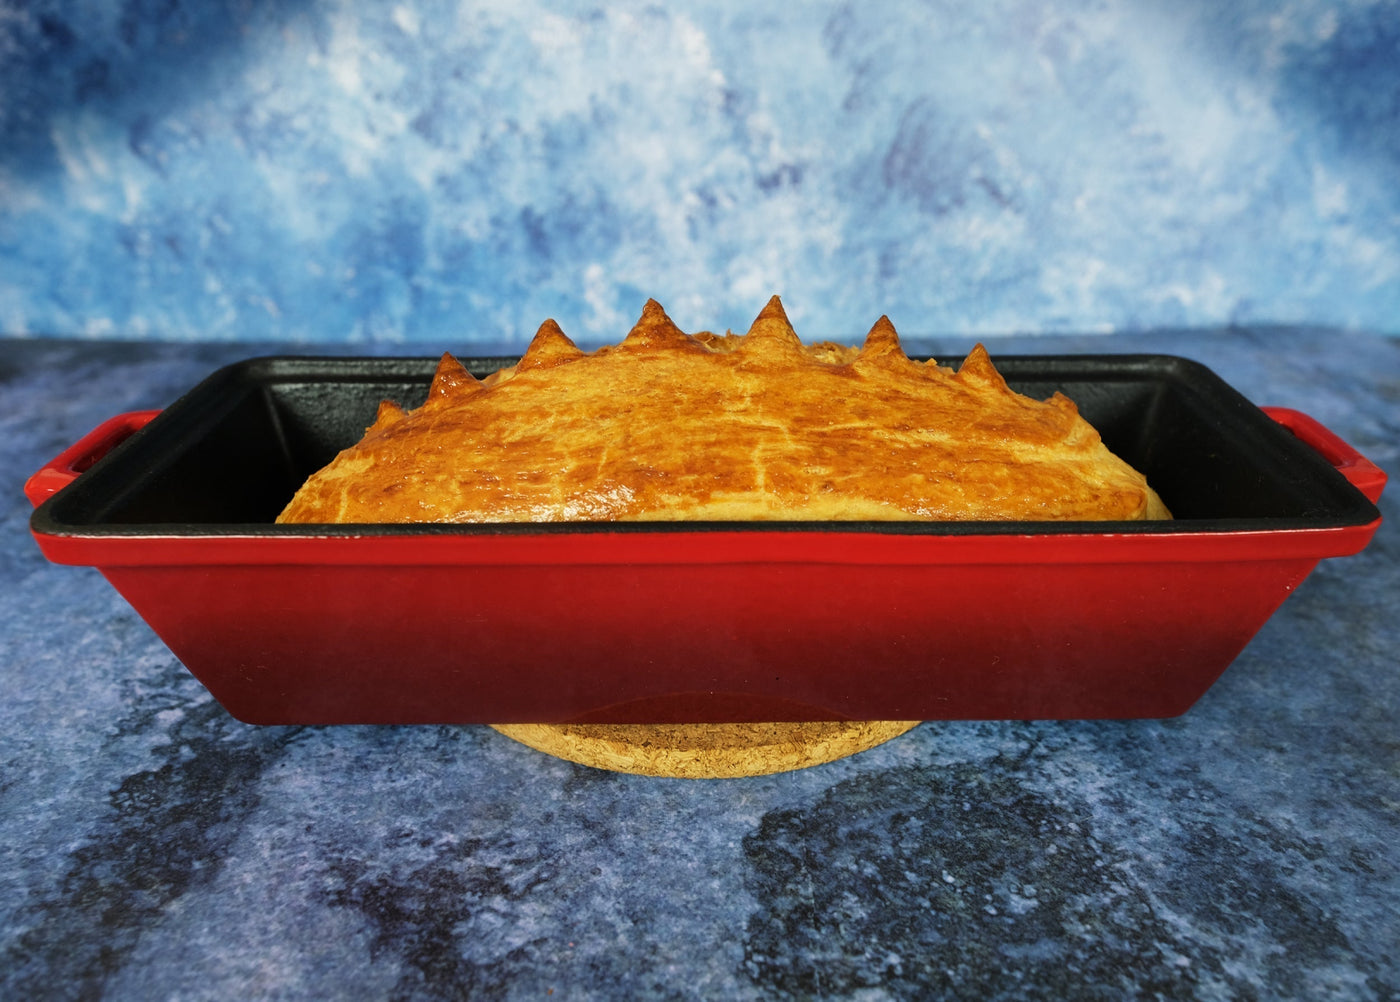 Kusurlardan Dolayı İndirimli - 2'li Paket Emaye Kapaklı Dökme Demir Ekmek Tavası - Pişirme ve Pişirme için Fırında Güvenli Form - Somun Tavası